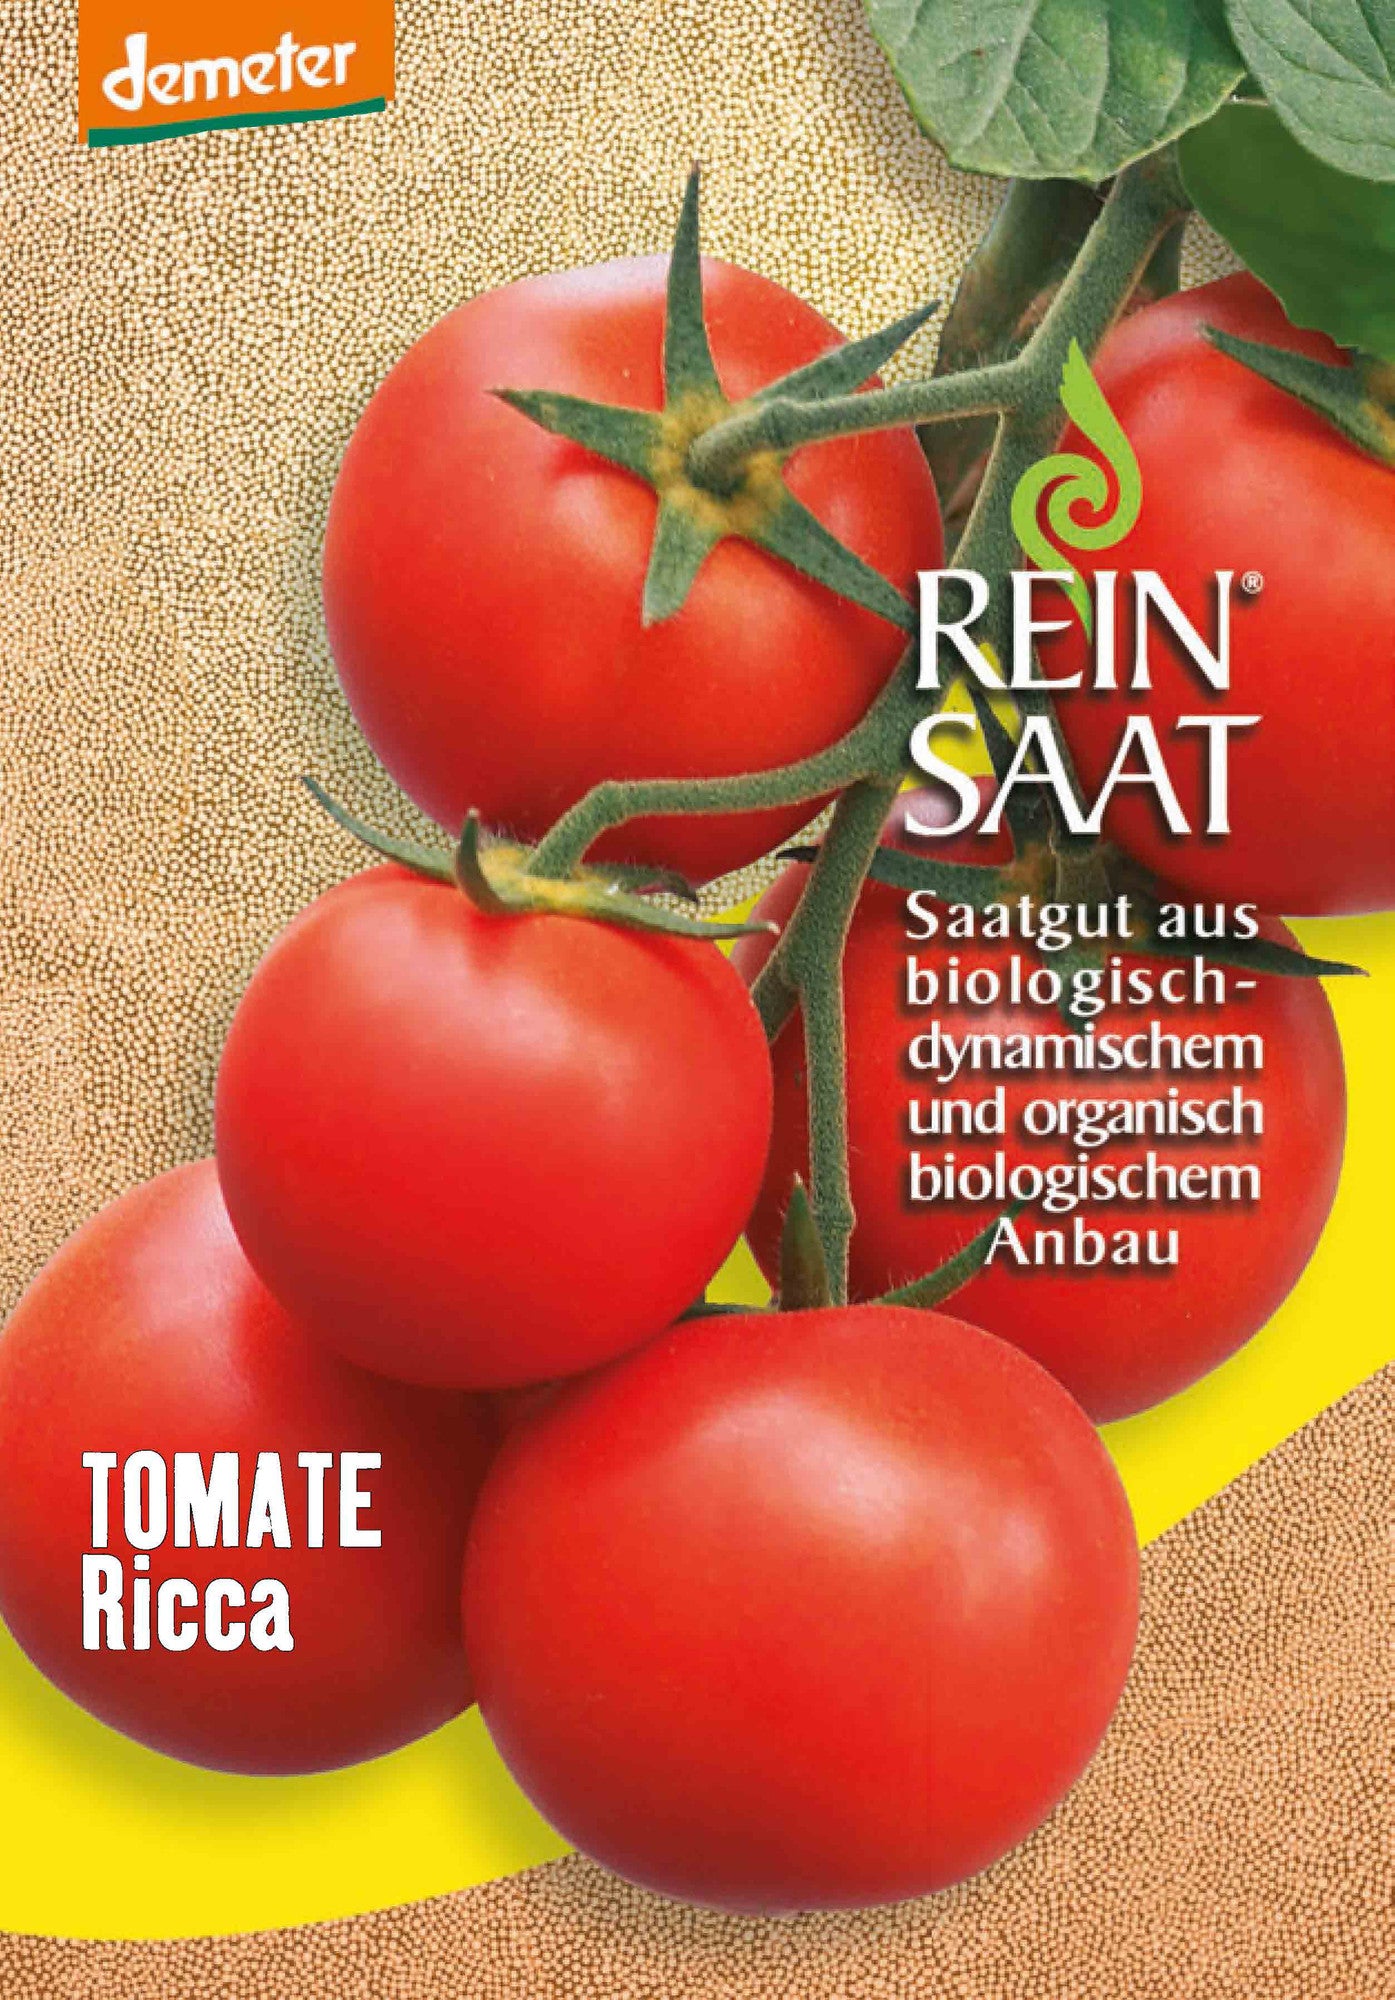 Tomate Ricca | BIO Tomatensamen von Reinsaat